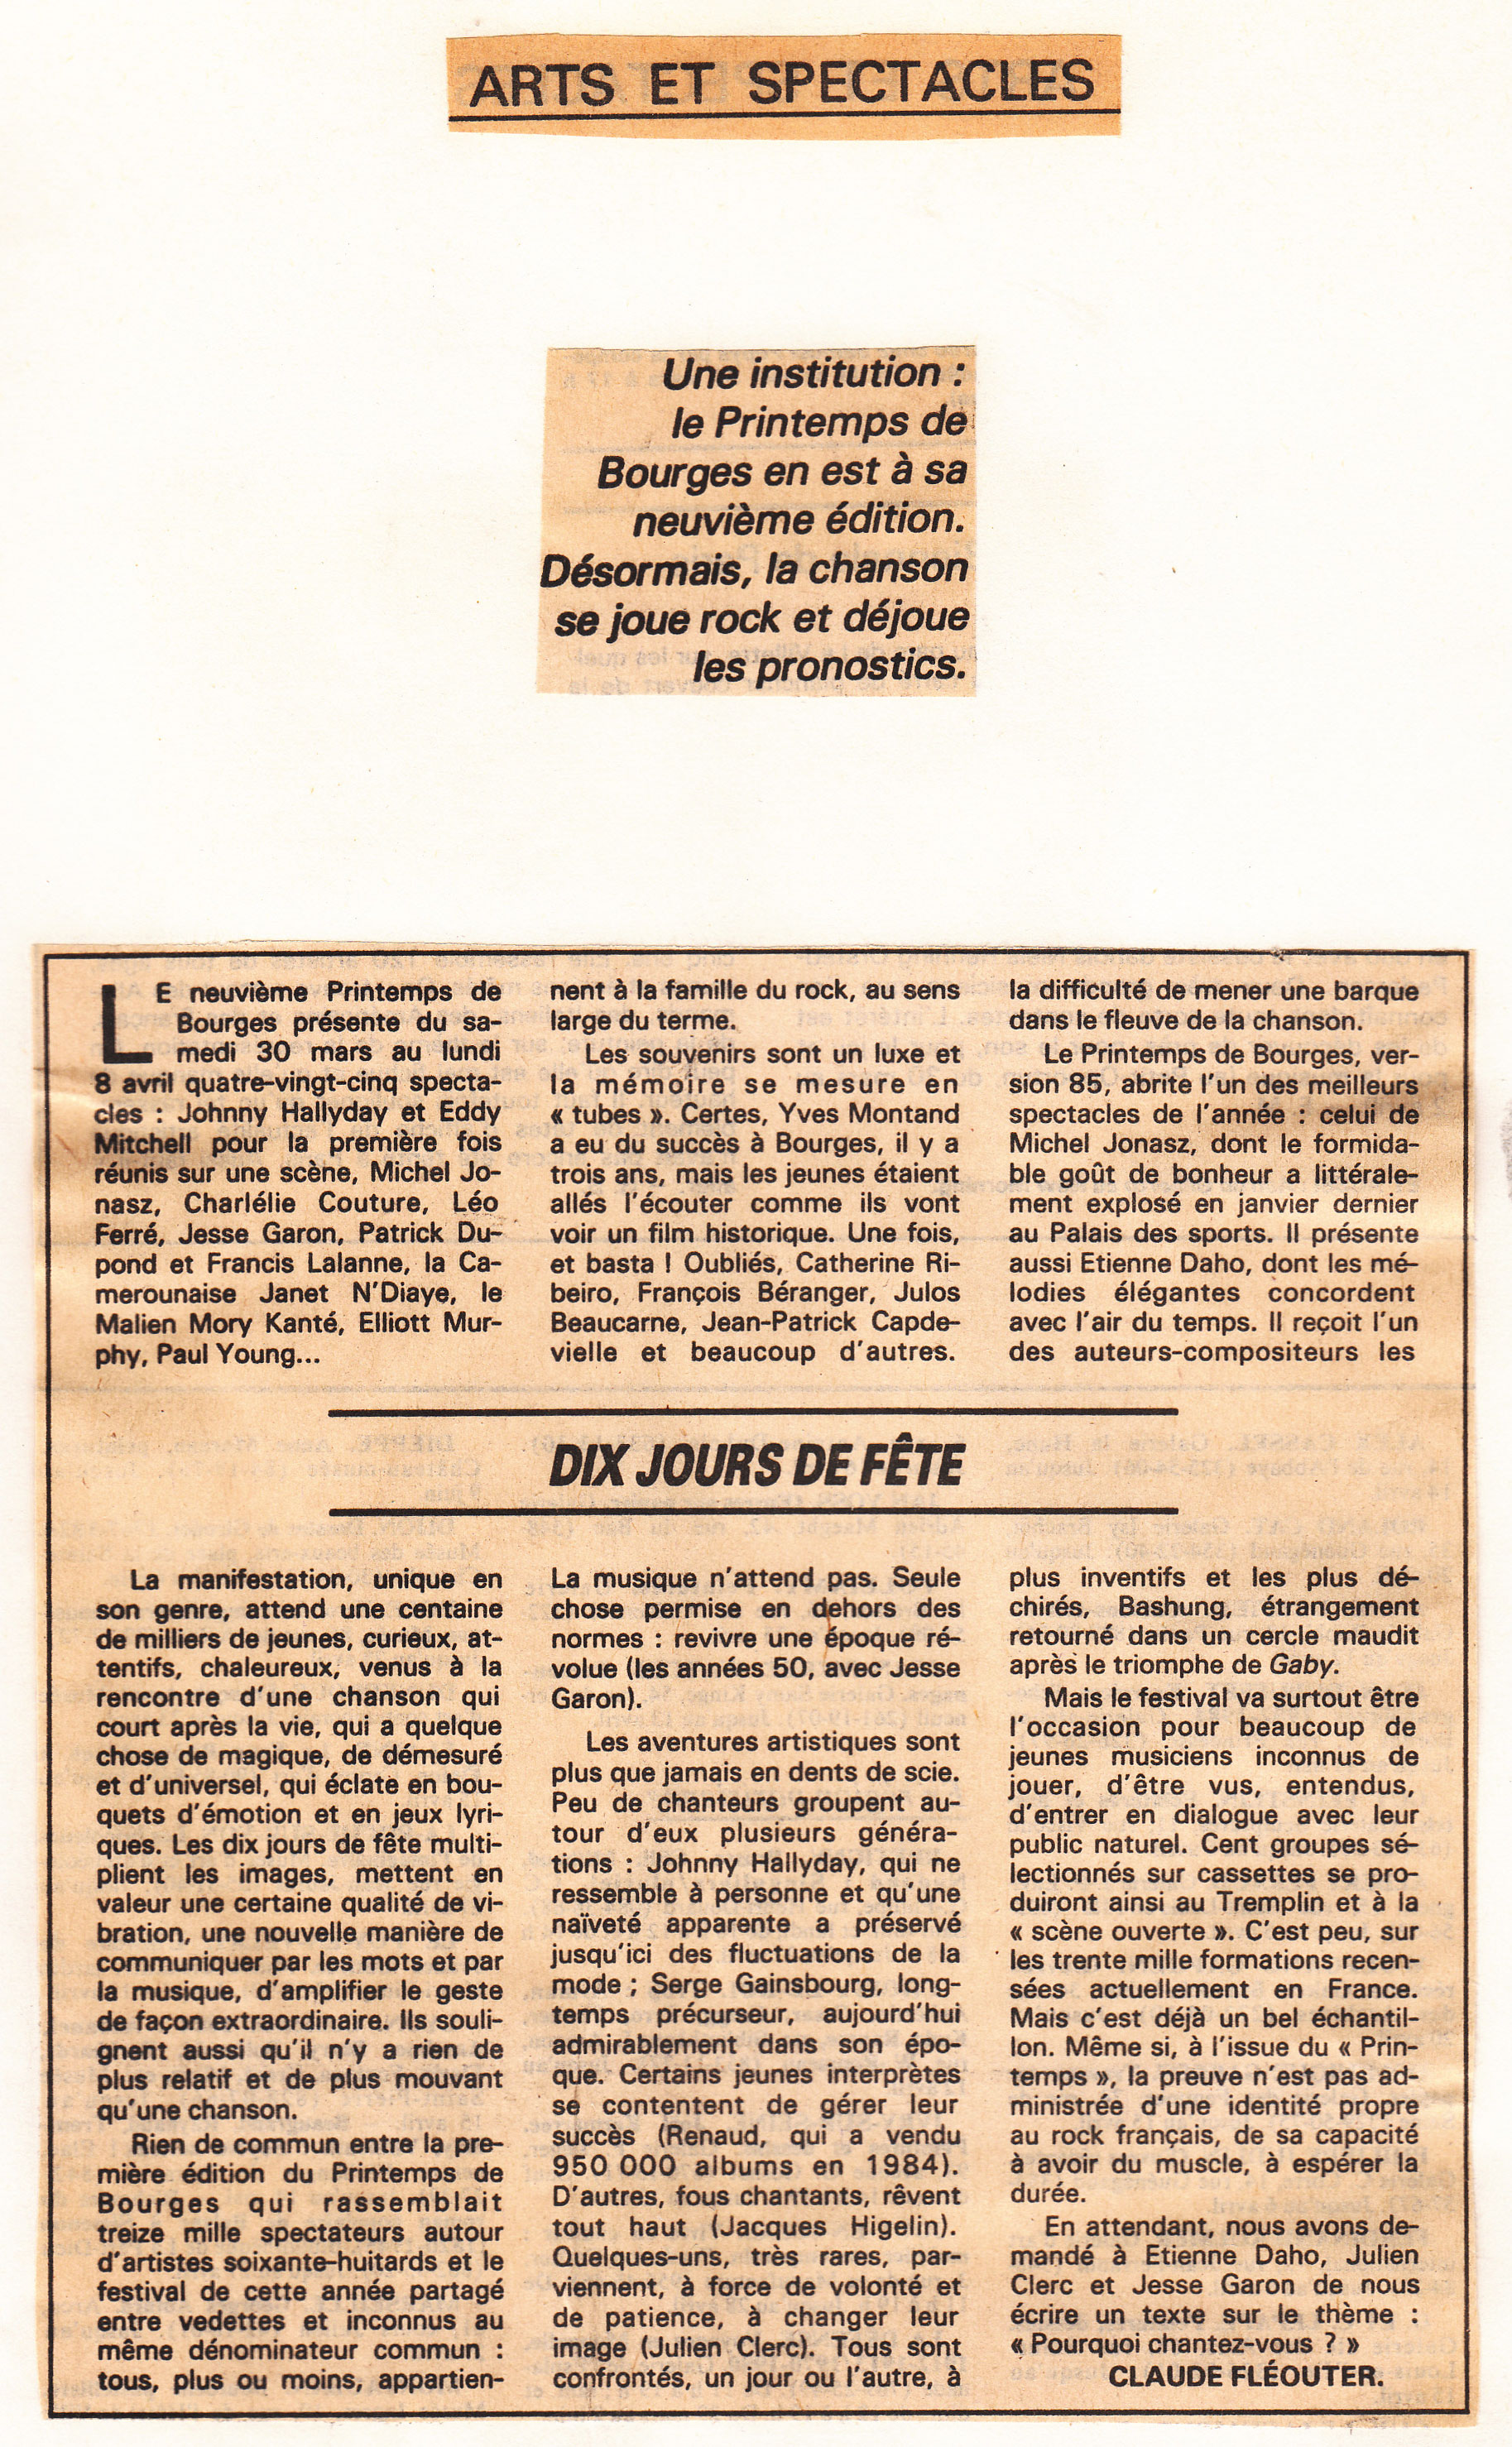 Léo Ferré - Le Monde du 28 mars 1985